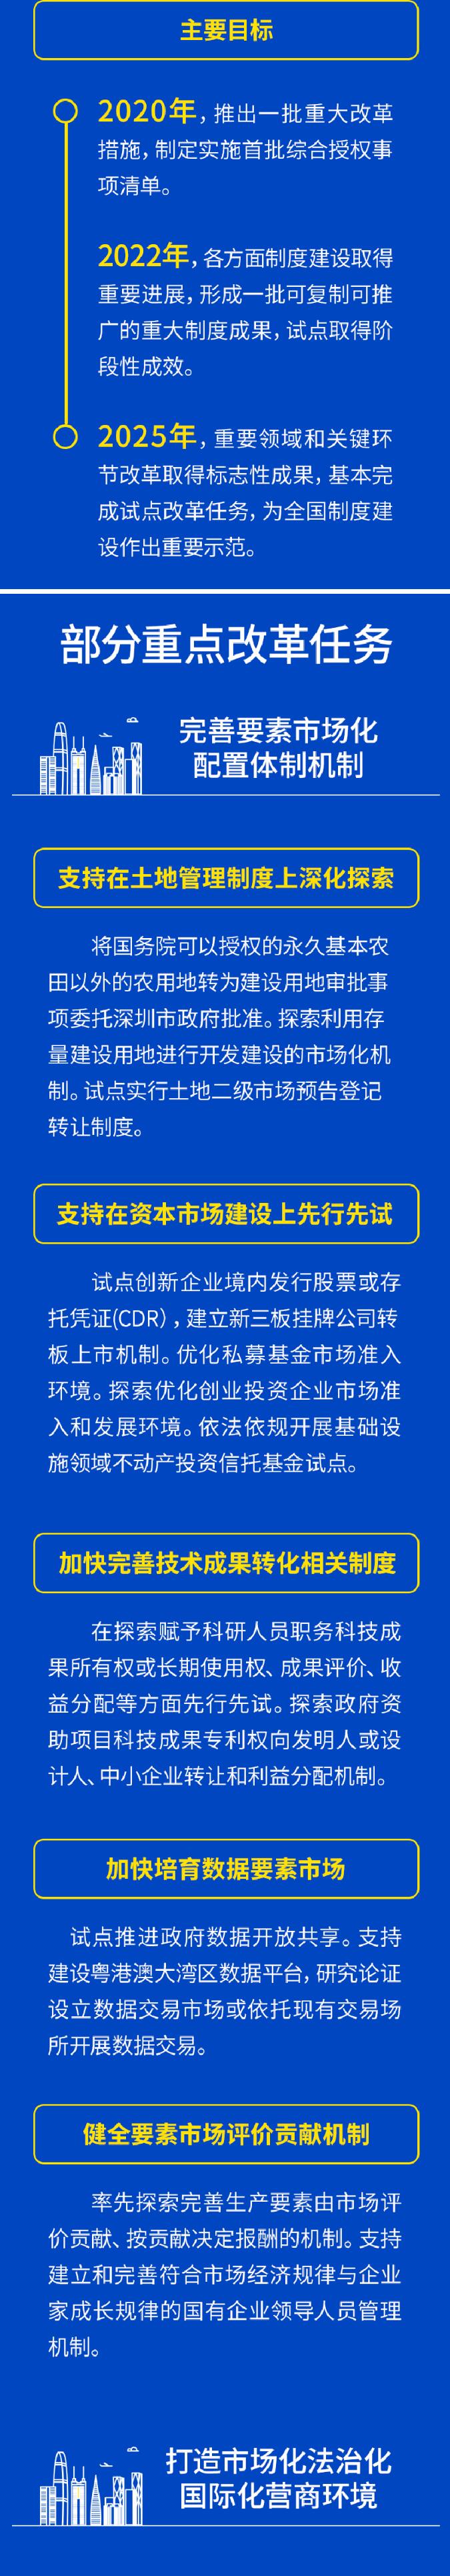 2022年深圳积分入户为什么一直不开放?官方回复来了!